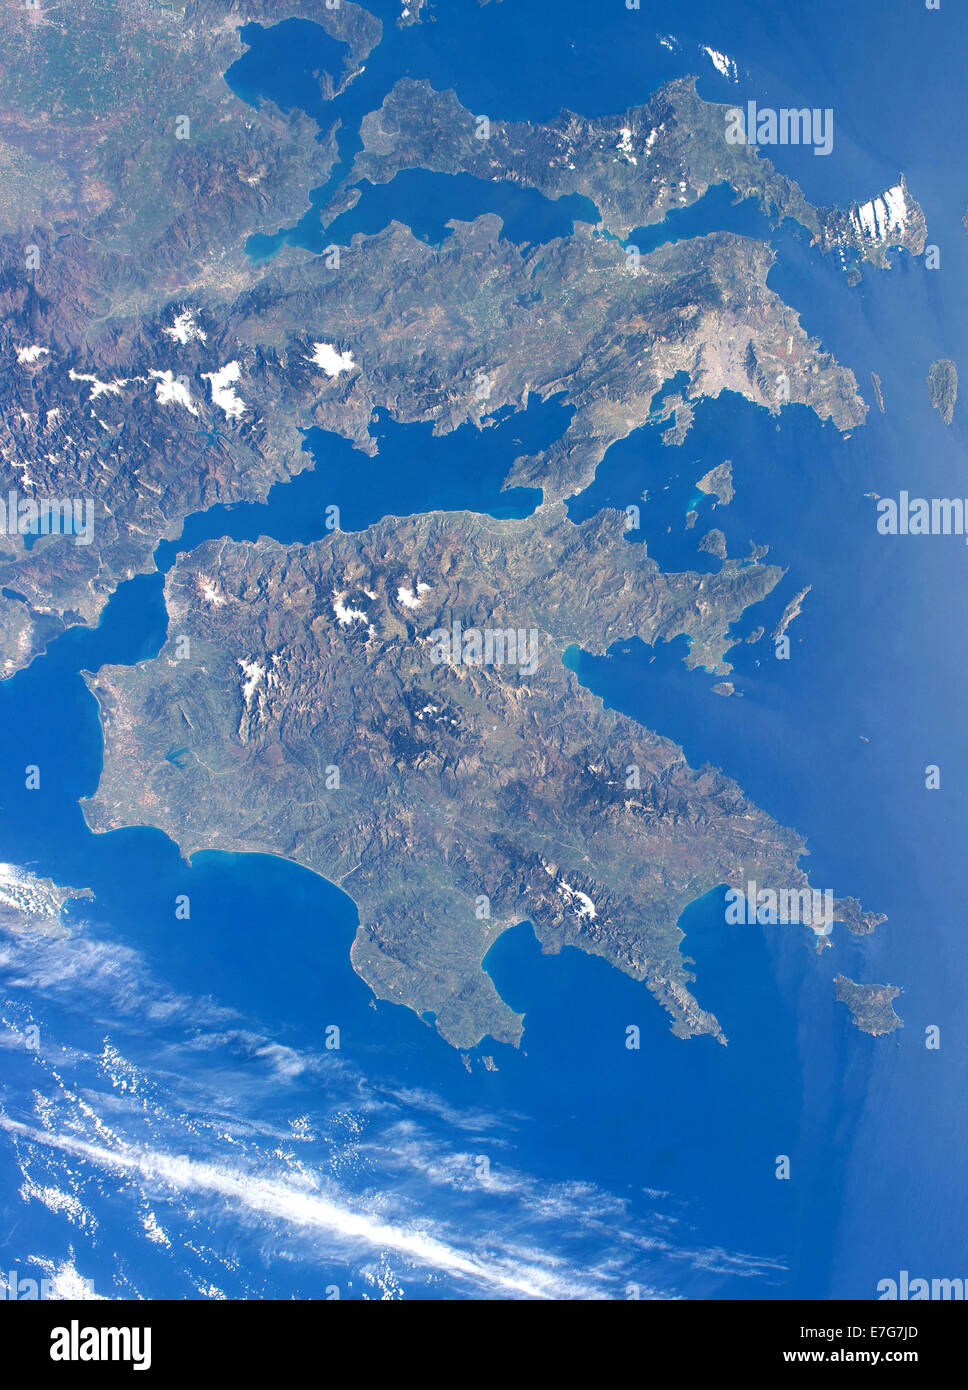 Grecia, fotografía aérea de Grecia, nación de Grecia Foto de stock